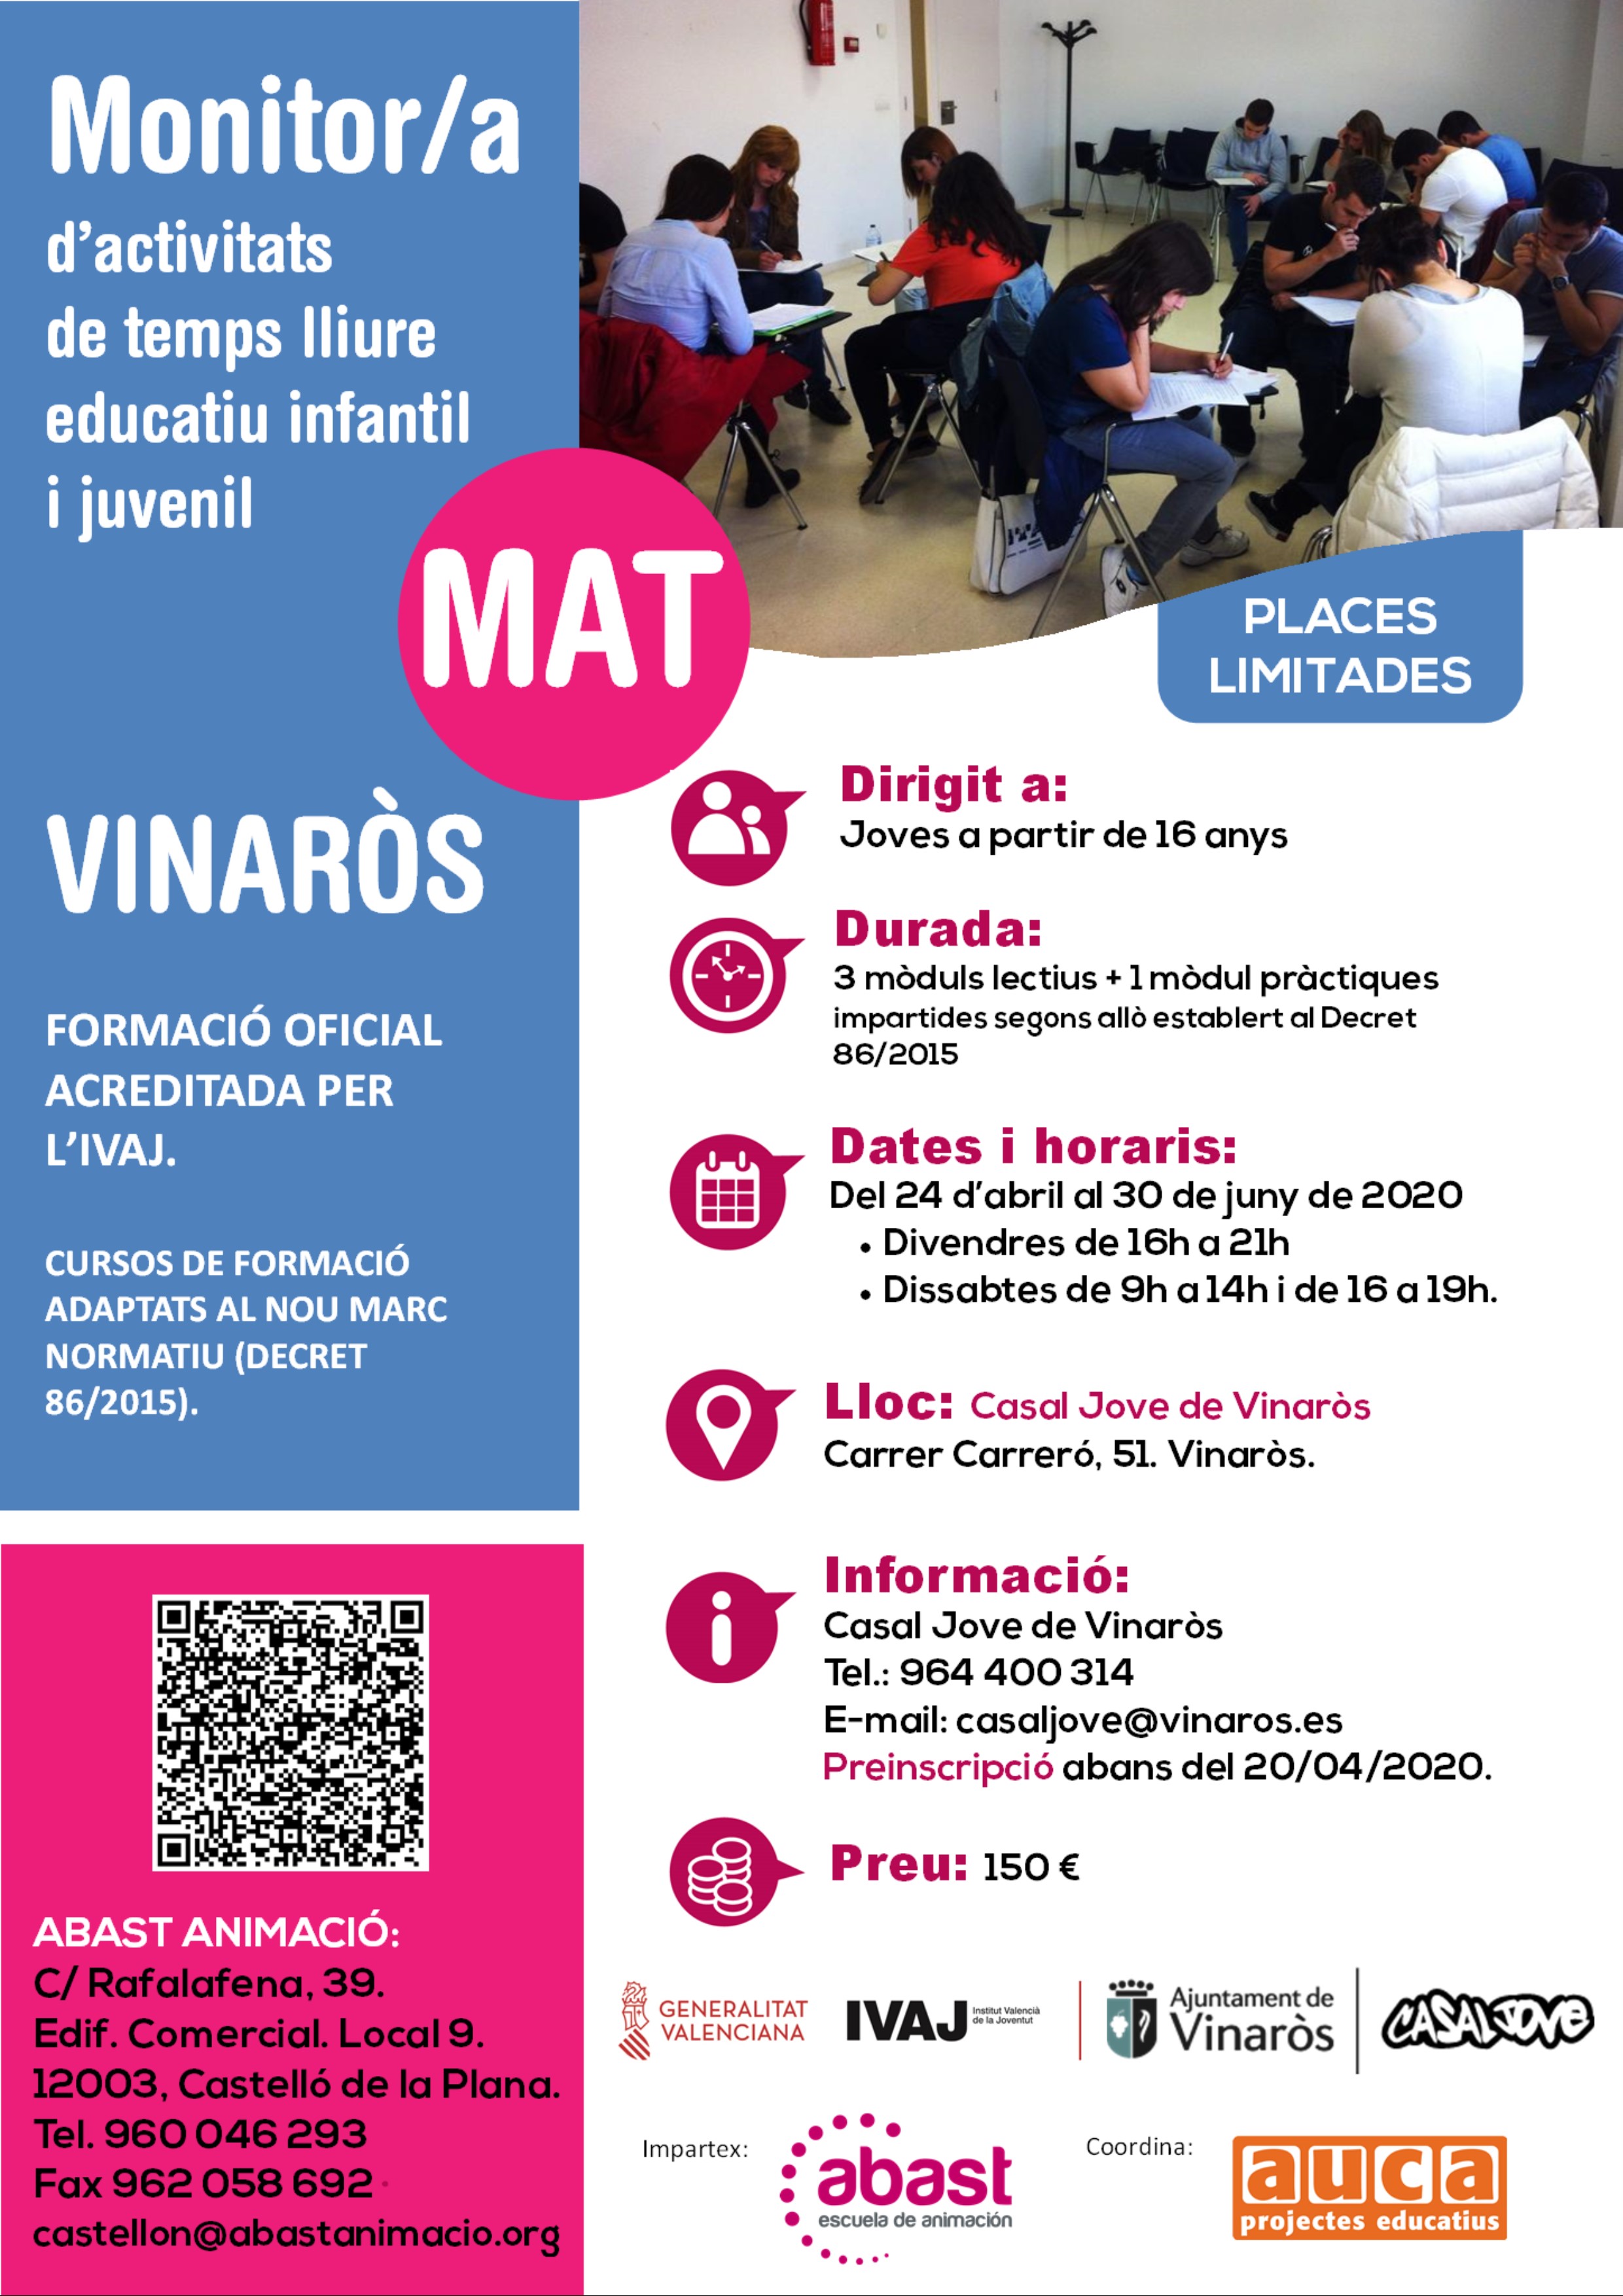 Curs monitor/a d'activitats de temps lliure educatiu infantil i juvenil (MAT) a Vinaròs